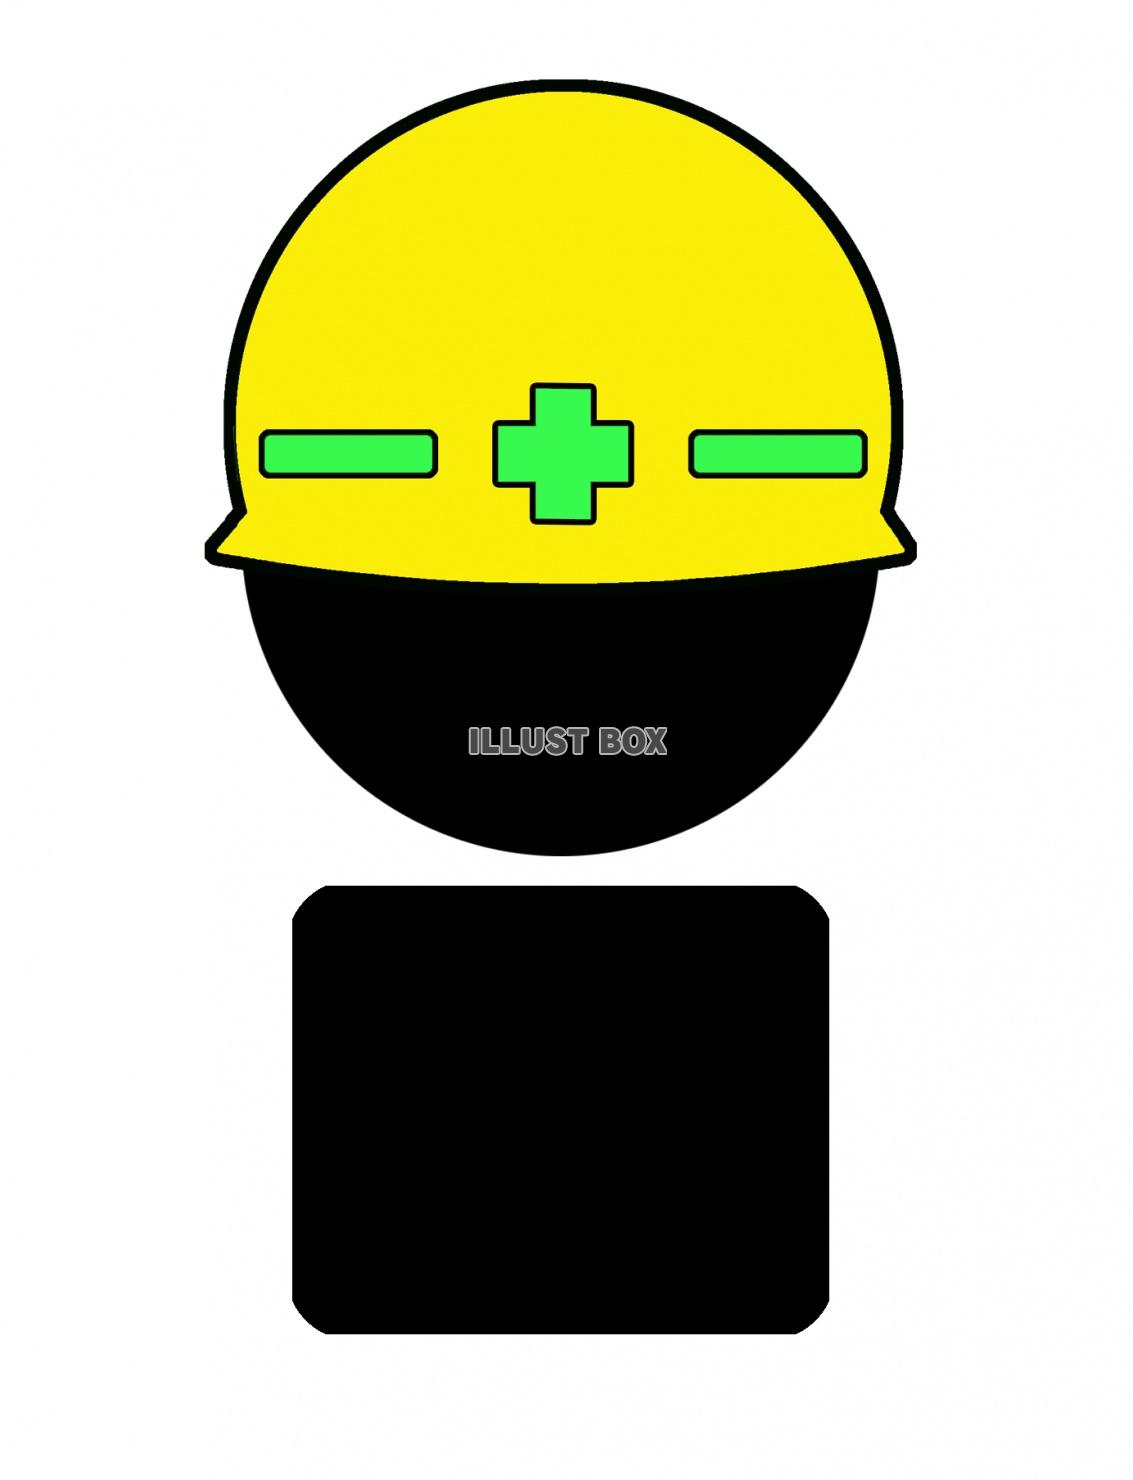 工事用ヘルメットを着用したシルエット（jpeg)